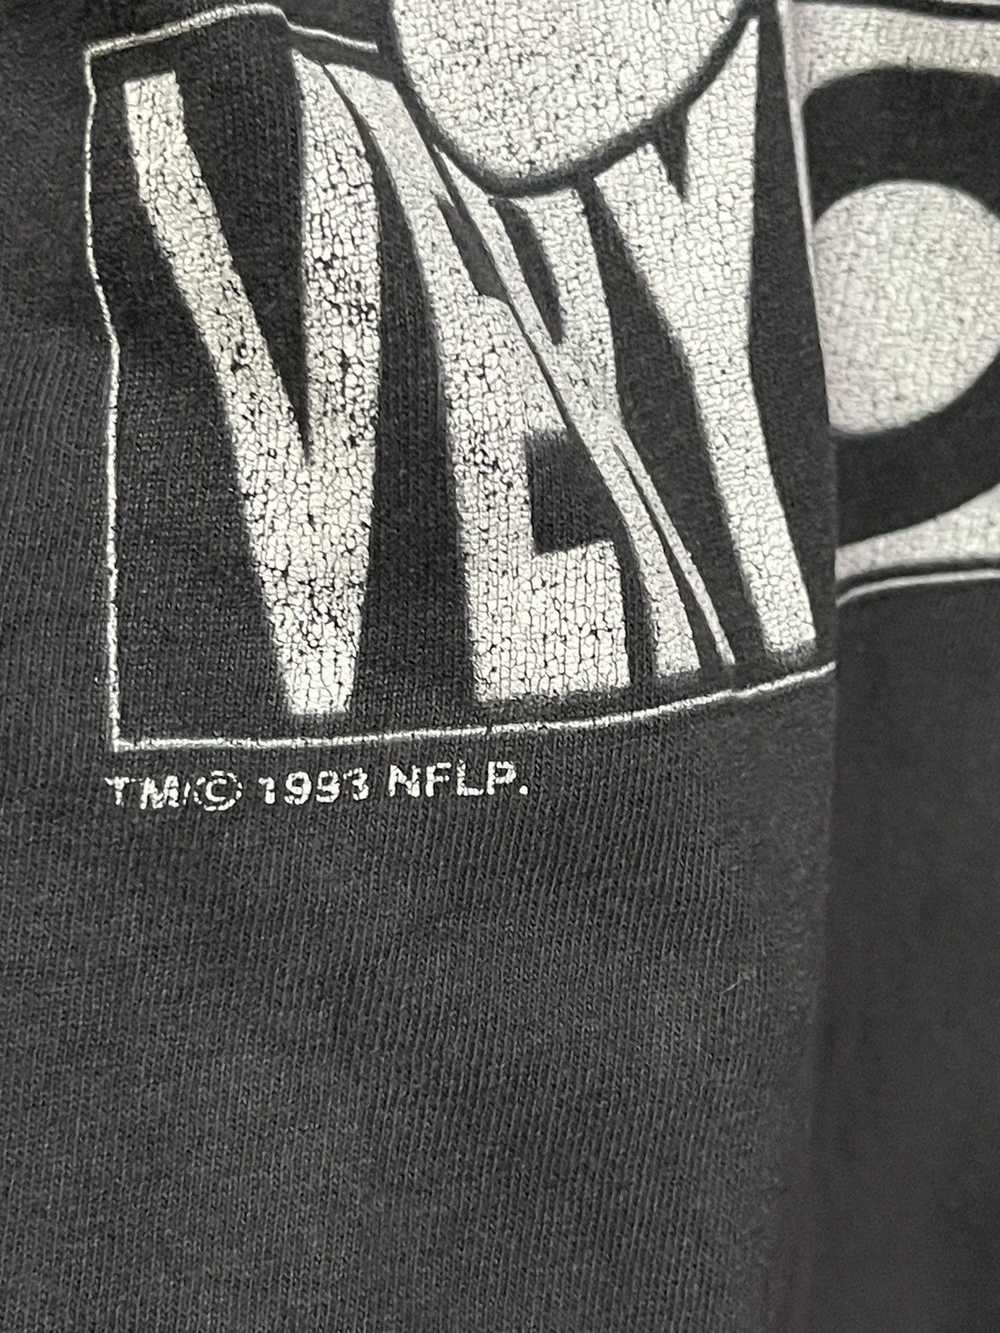 NFL × Sportswear × Vintage Vintage 90s NFL Very R… - image 7